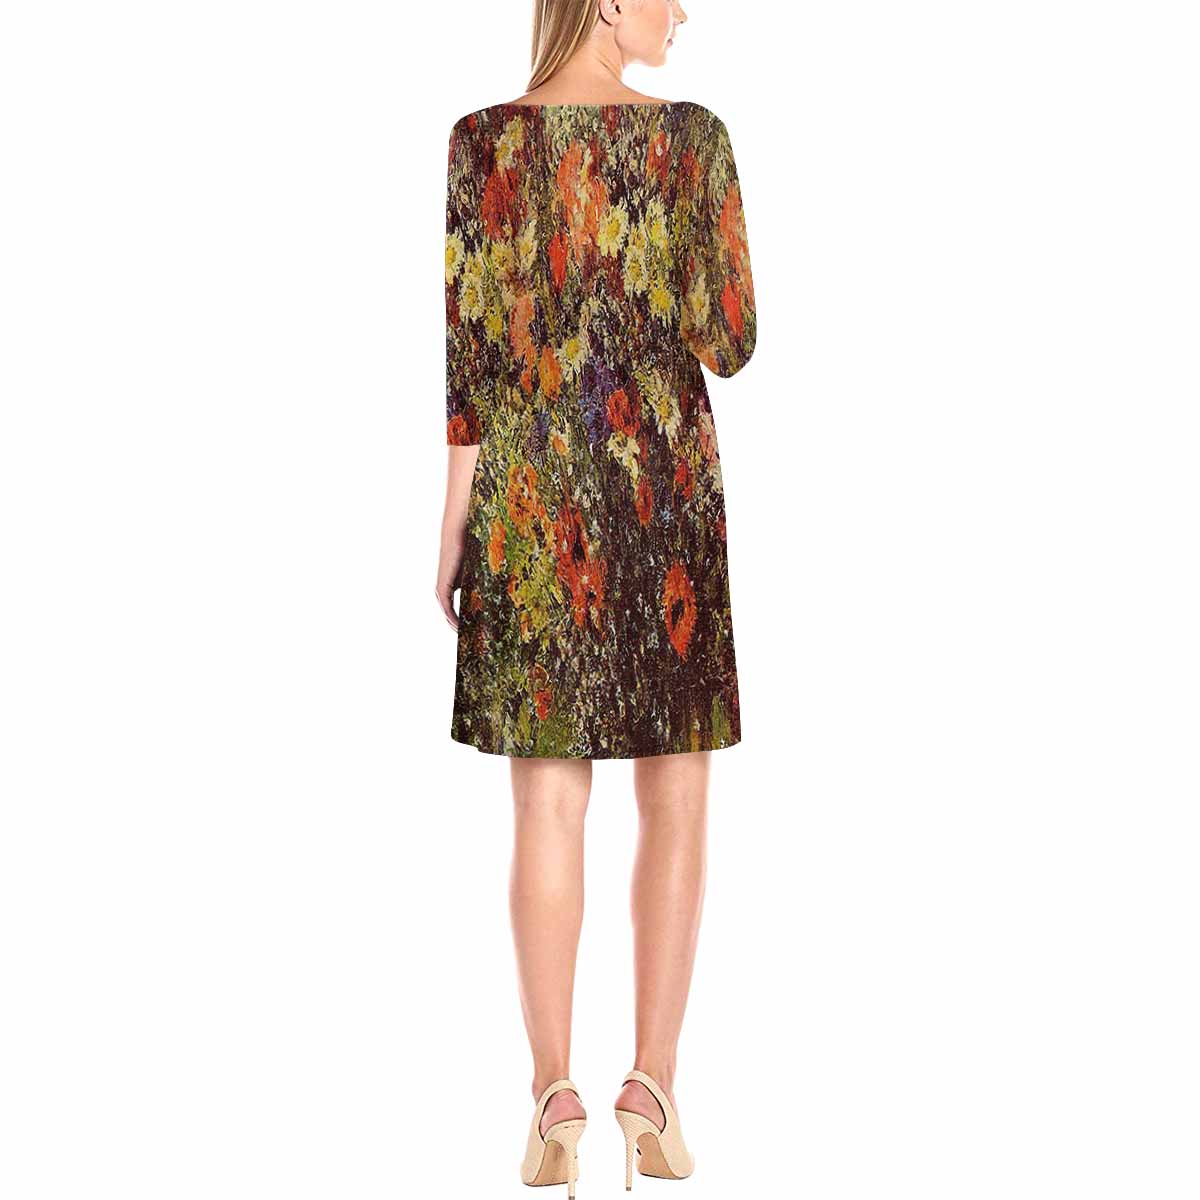 Vintage floral loose dress, model D29532 Design 24